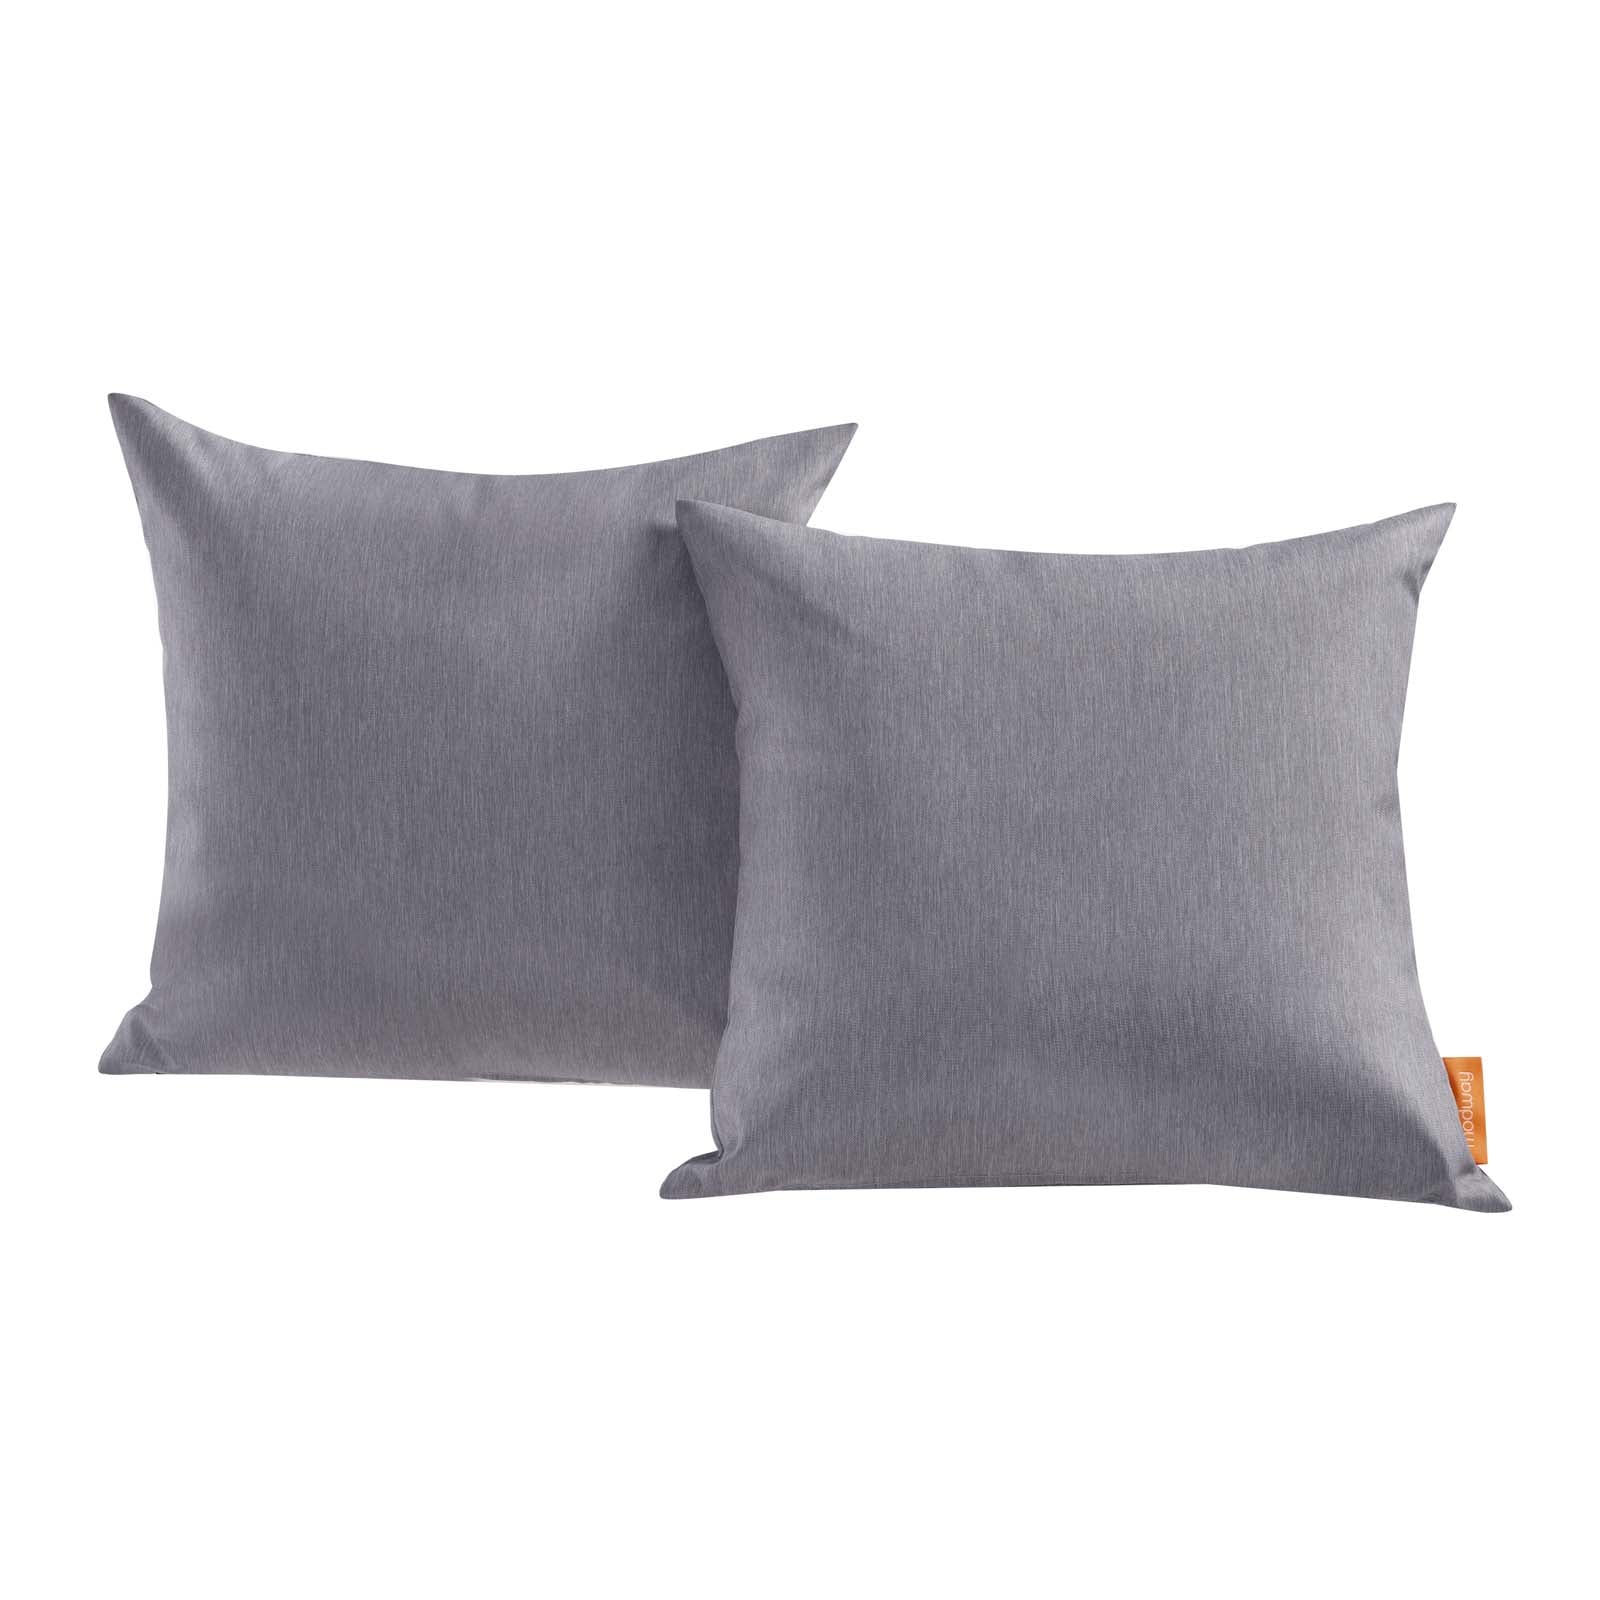 Modway Outdoor Pillows & Cushions - Convene Outdoor Patio Pillow Gray (Set of 2)